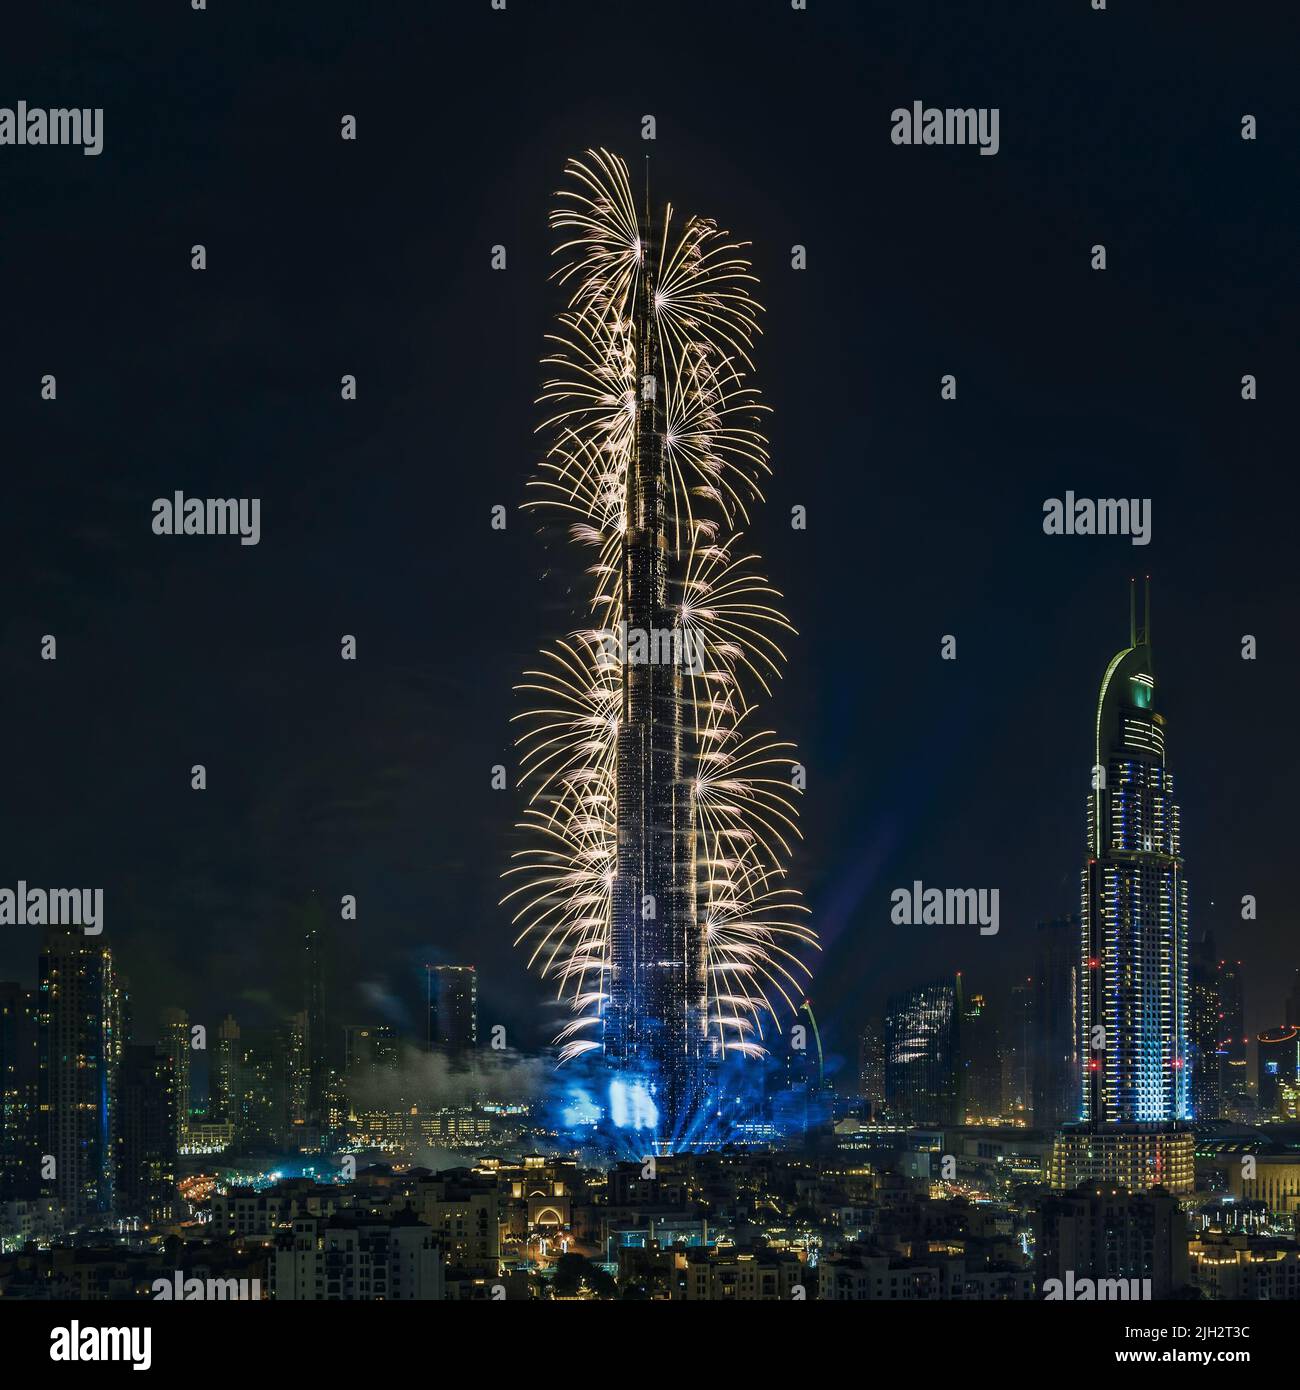 New Year Eve celebration with firework on Burj Khalifa, Dubai, United Arab Emirates Stock Photo